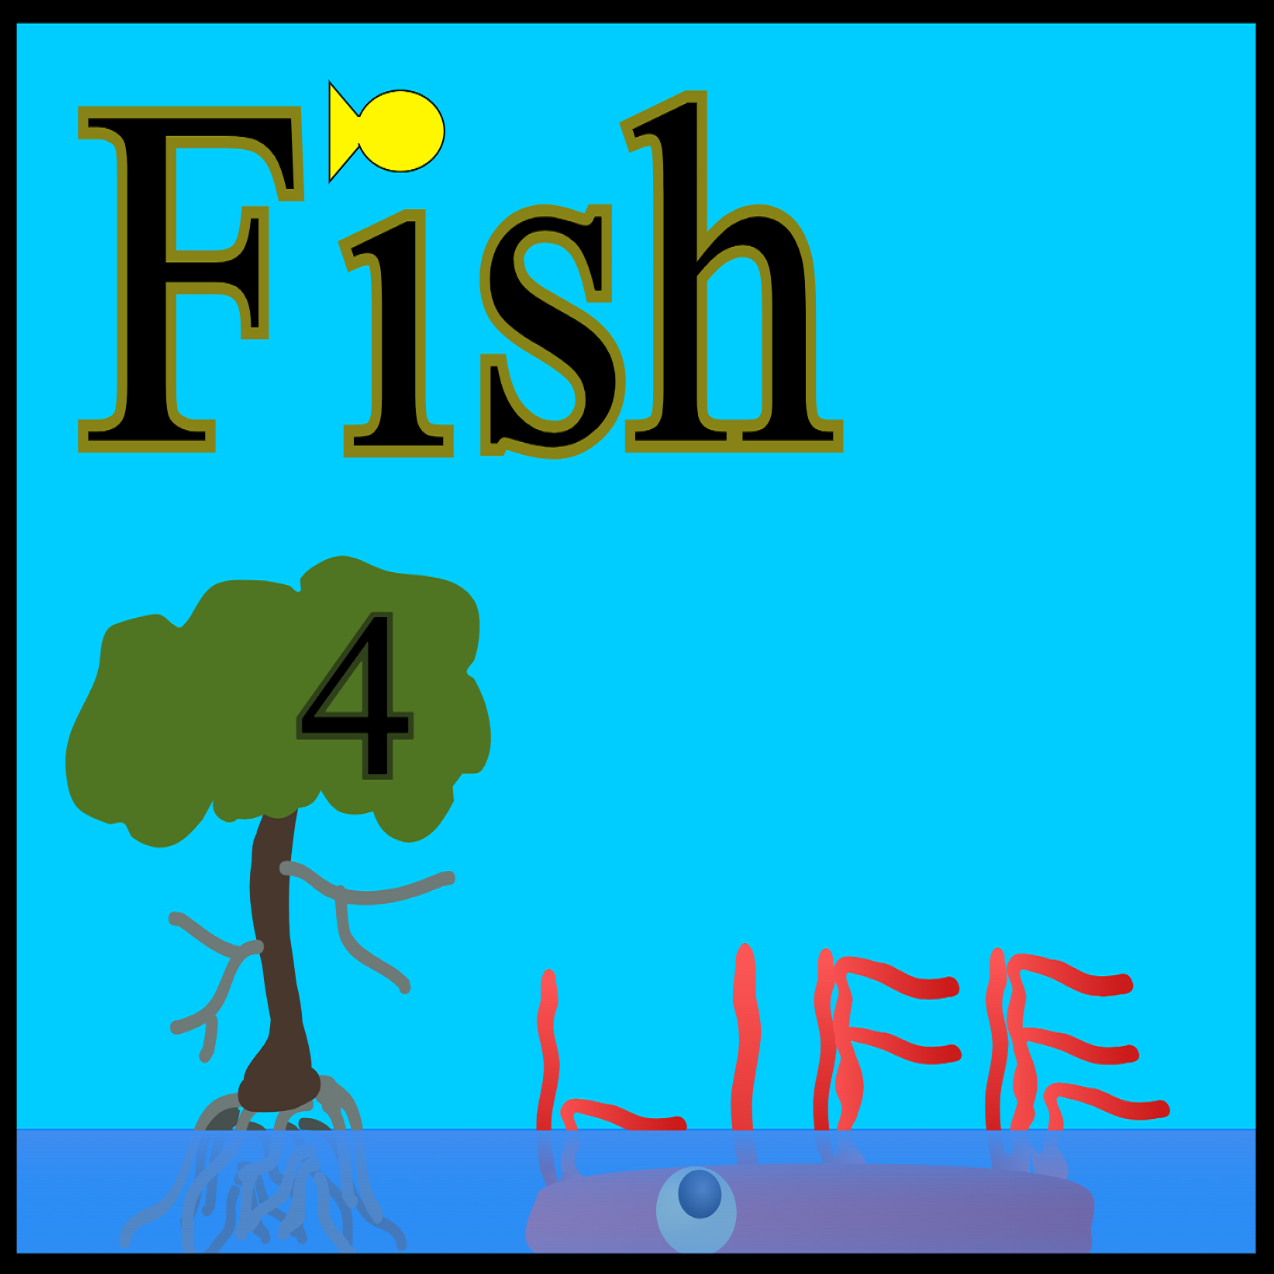 Fish 4 Life